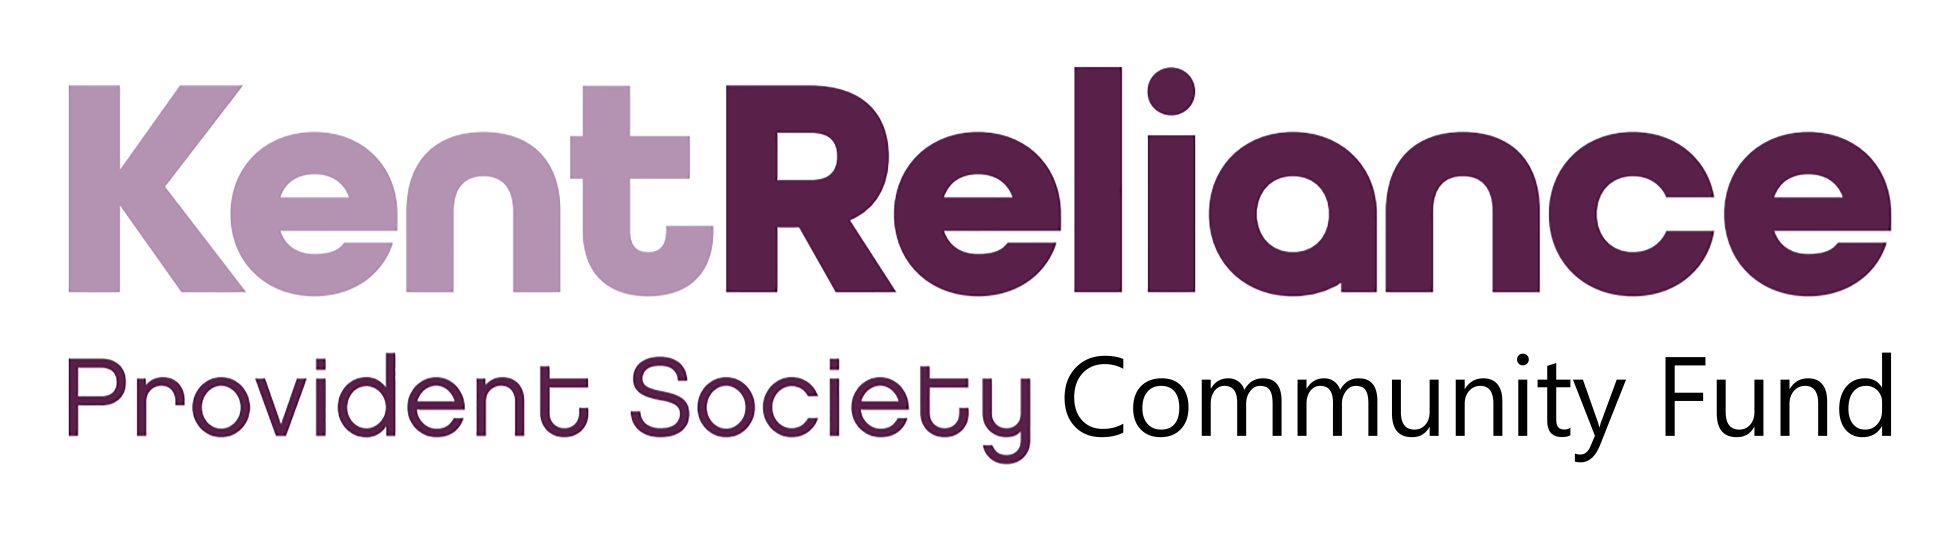 Ket Reliance Provident Society Community Fund logo